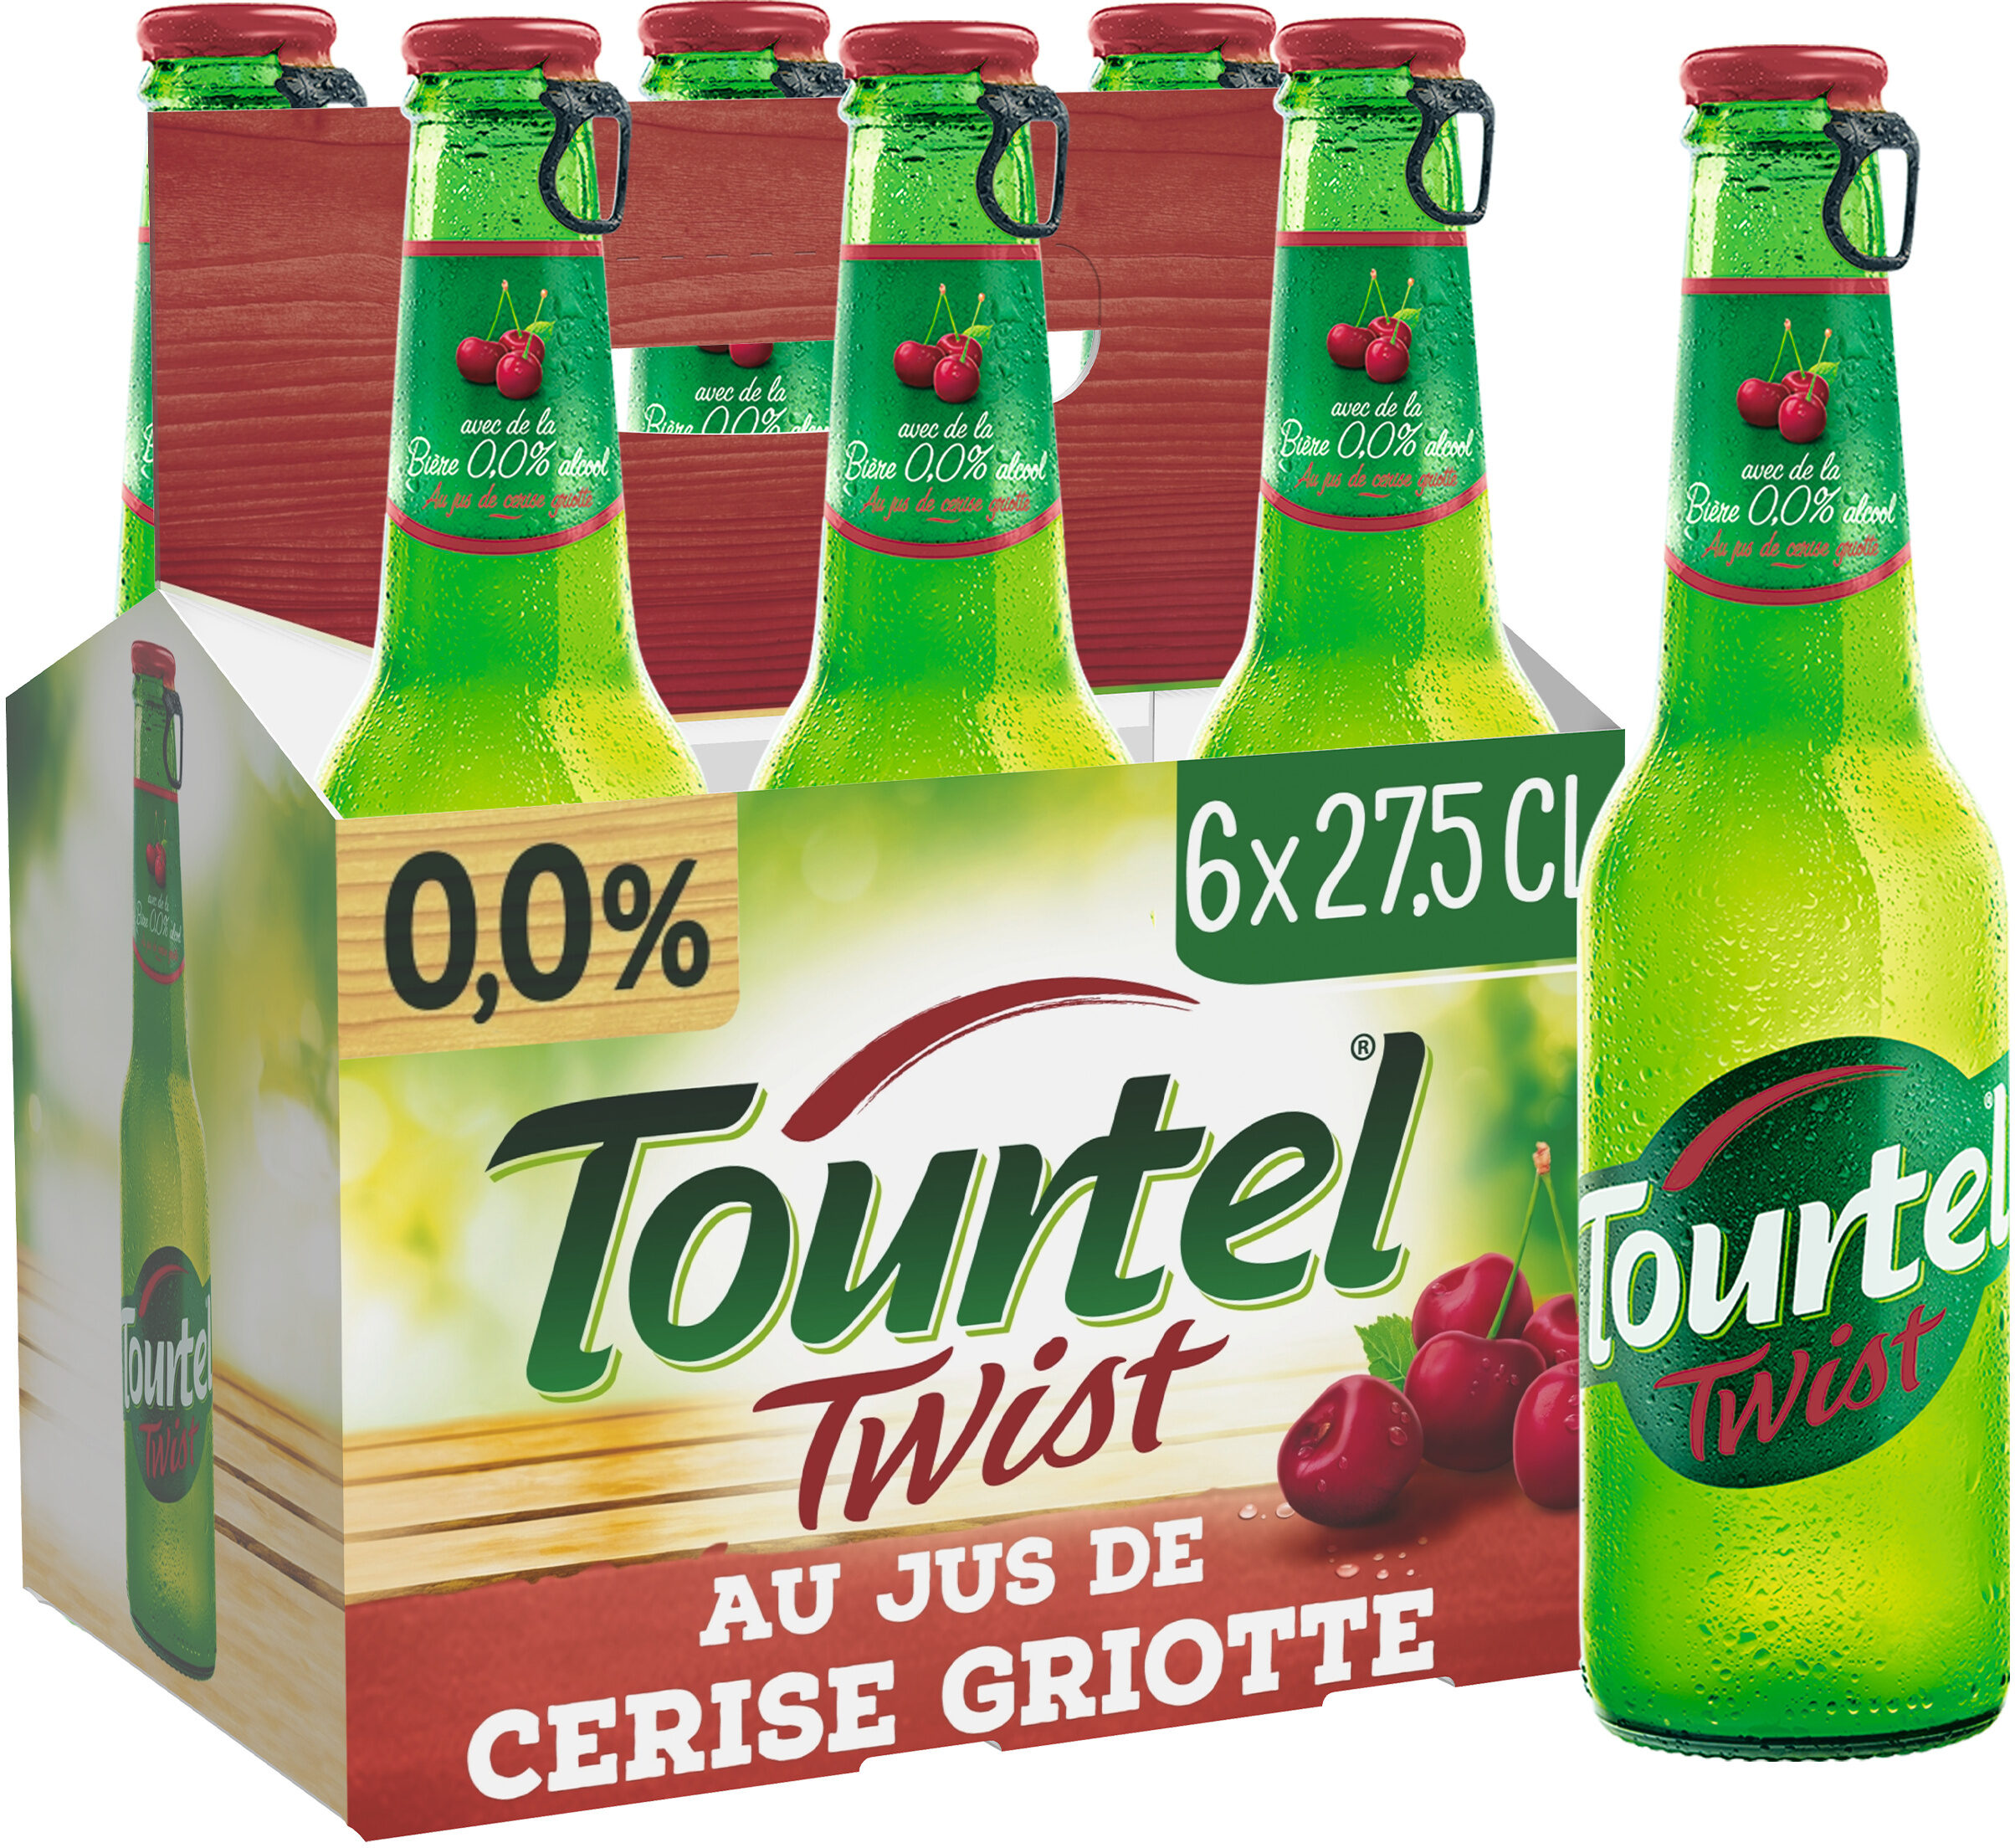 Tourtel 6X27,5CL TOURTEL TWIST CERISE 0.0 DEGRE ALCOOL - Product - fr